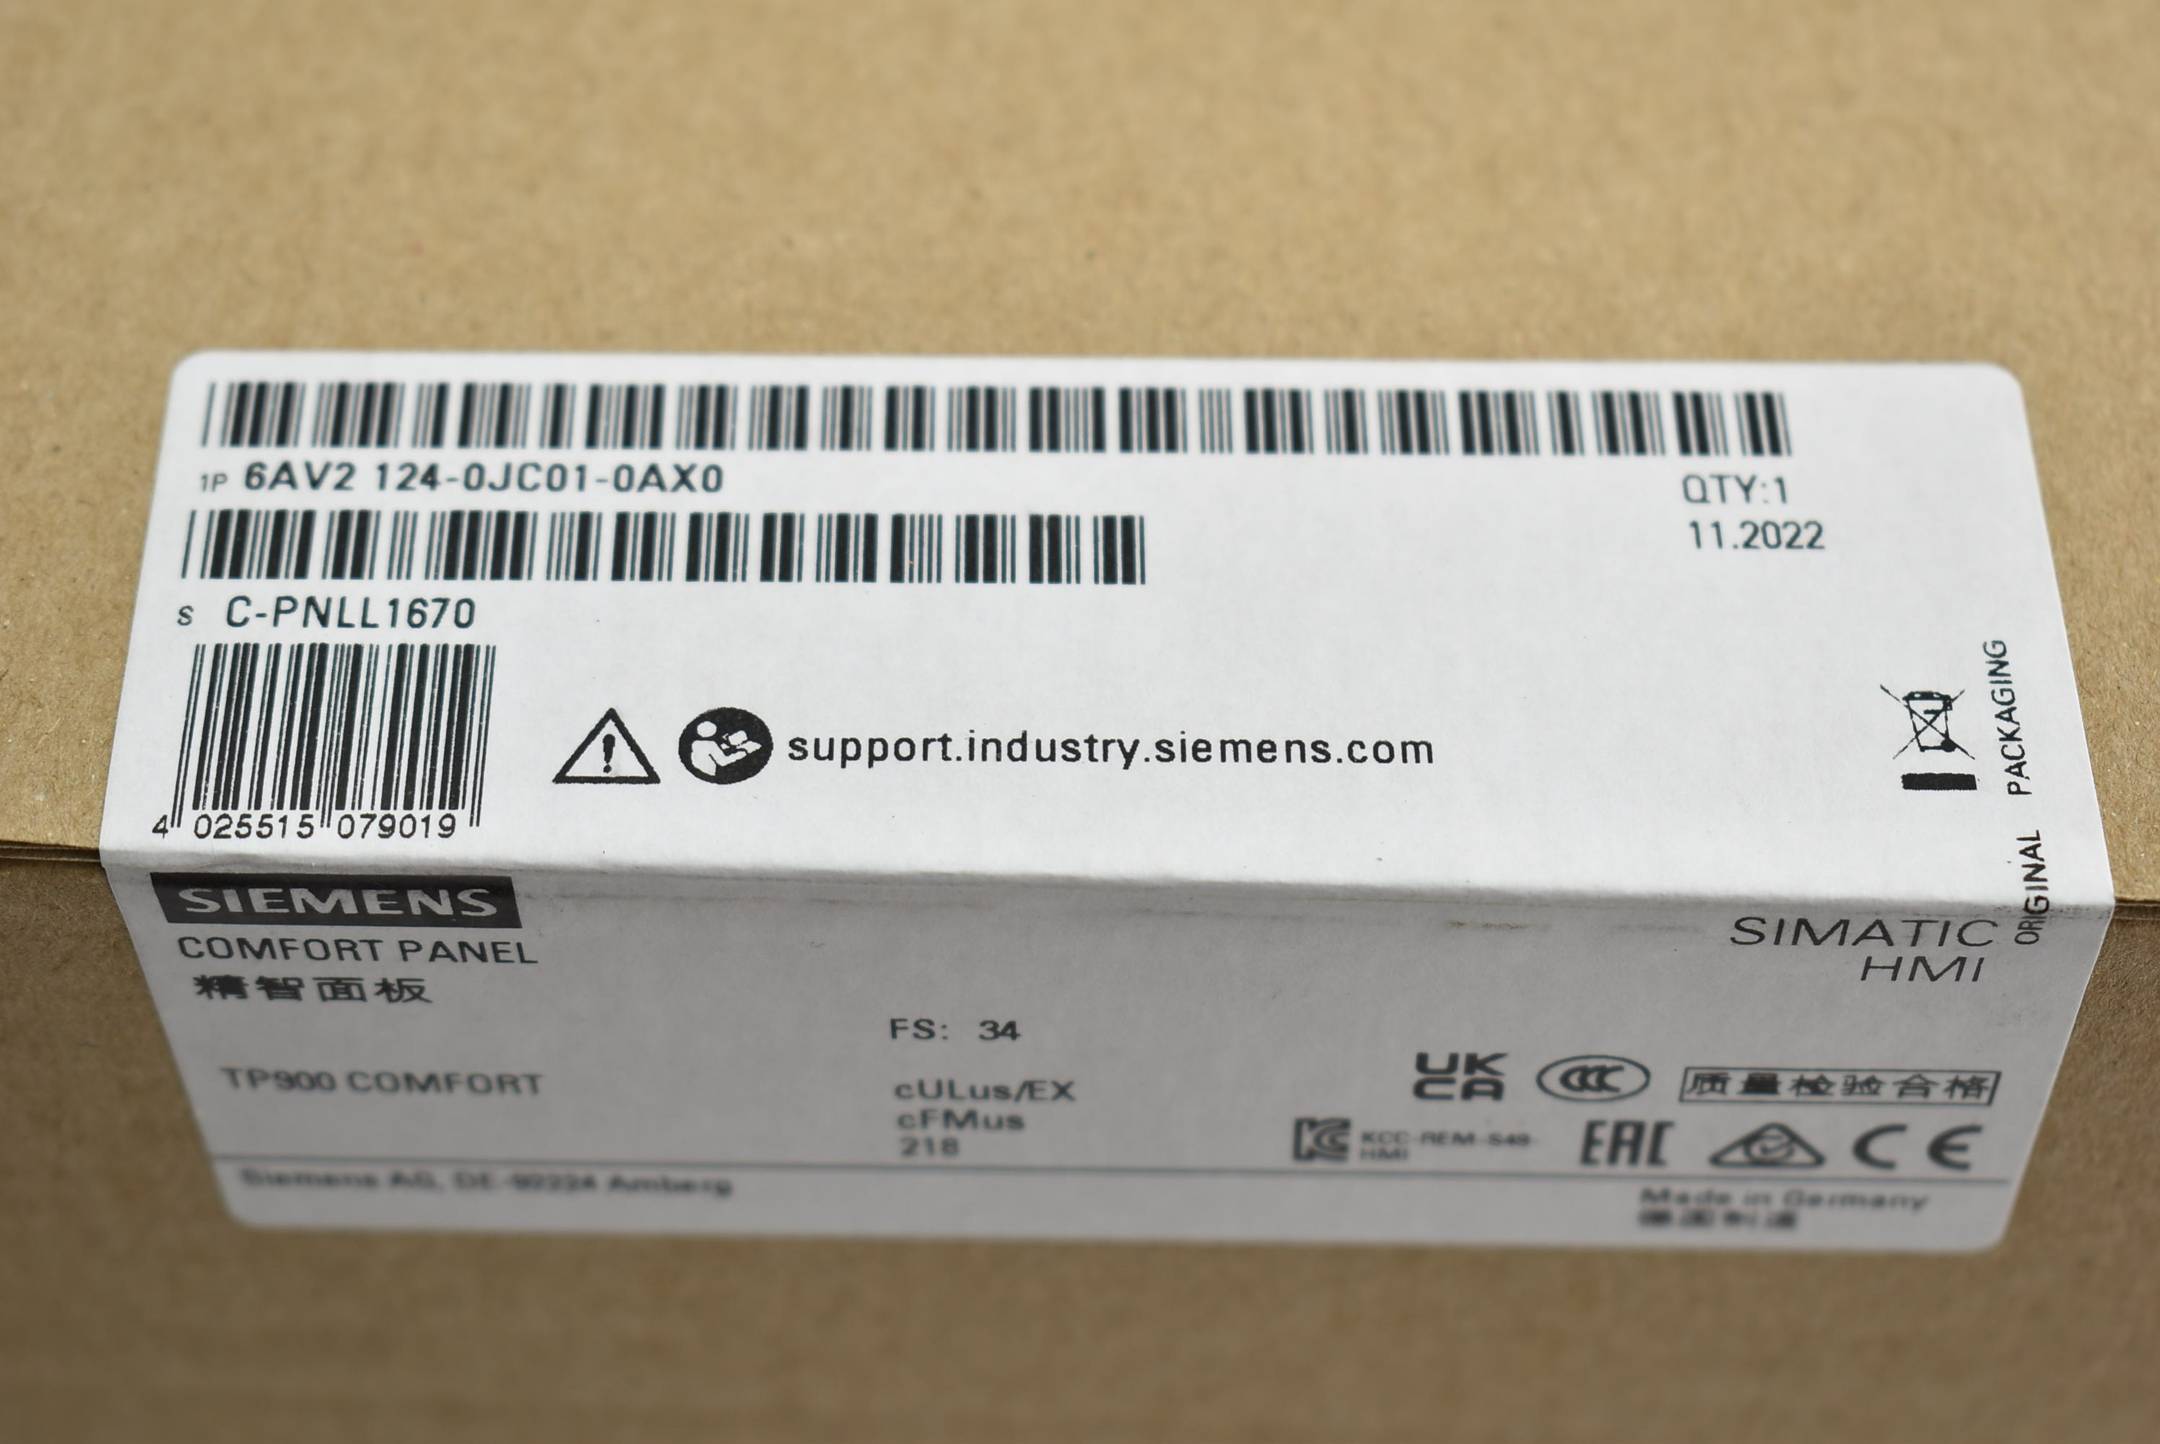 Siemens simatic HMI TP900 Comfort 6AV2 124-0JC01-0AX0 ( 6AV2124-0JC01-0AX0 ) E34